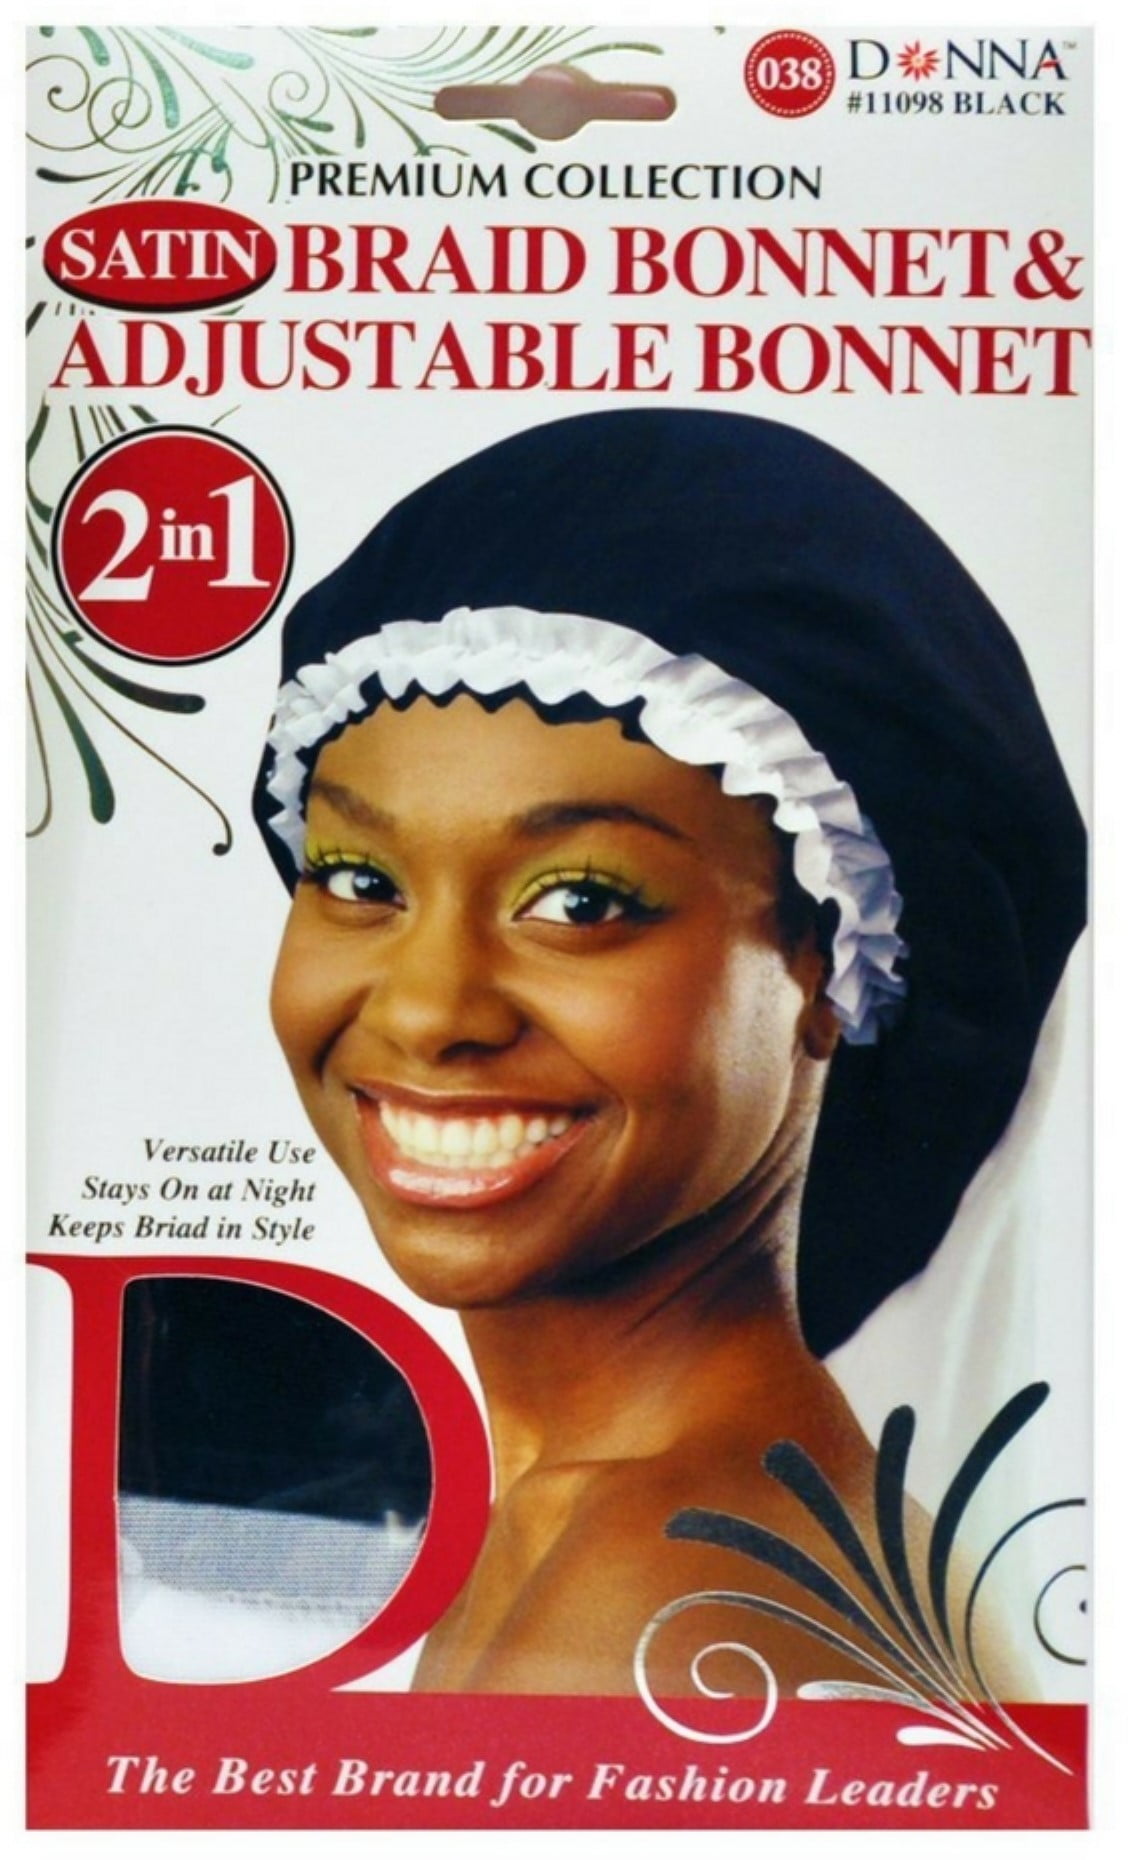 Donna Collection Premium 2 in 1 Satin Braid Bonnet & Adjustable Bonnet,  Black 1 Each